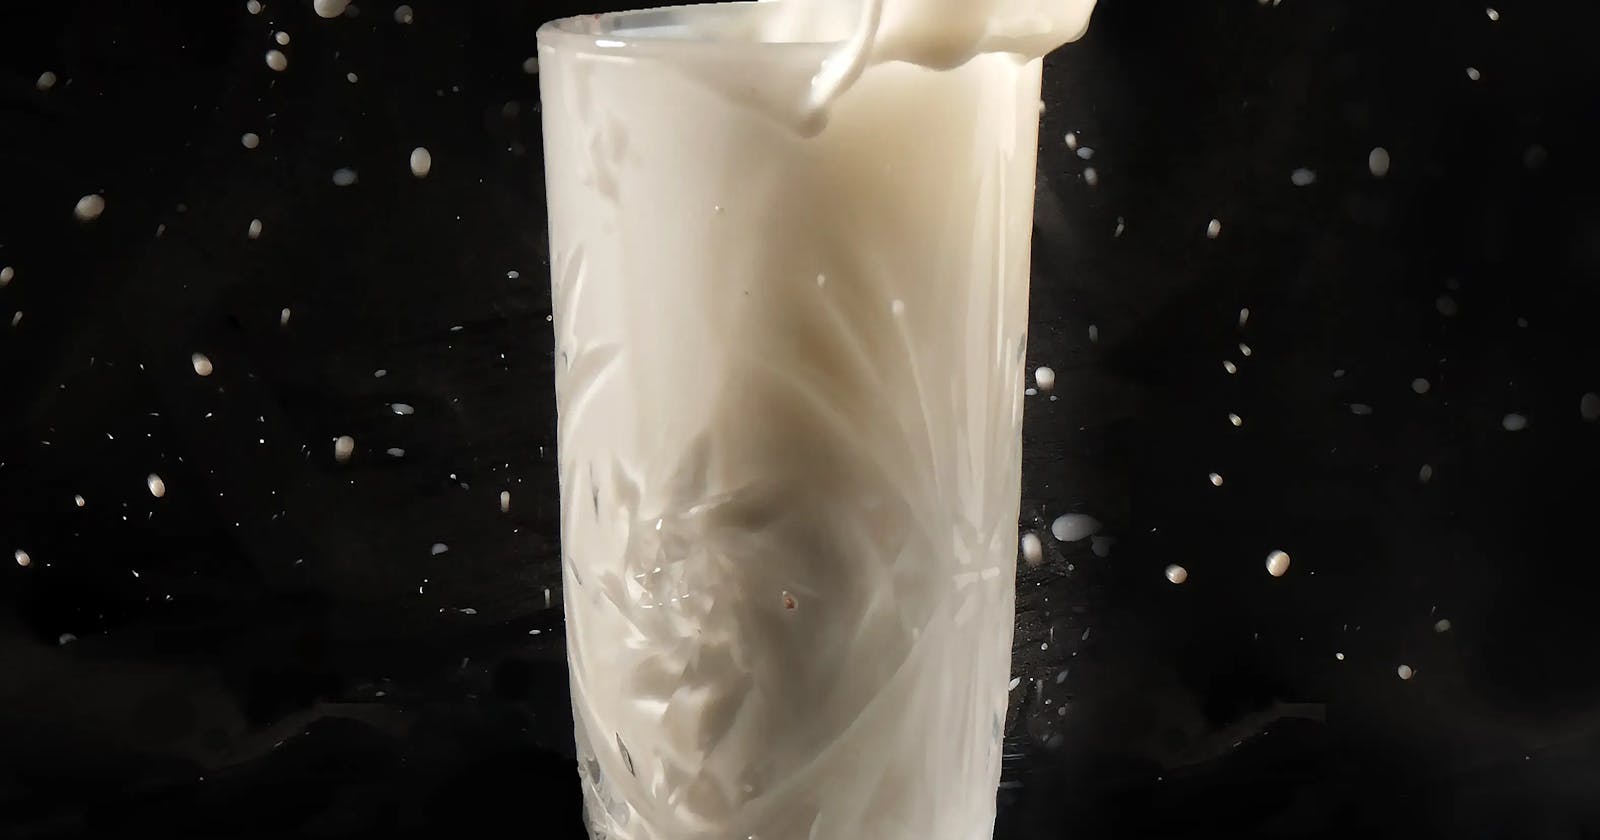 Milk: The Dark Side of the White Beverage